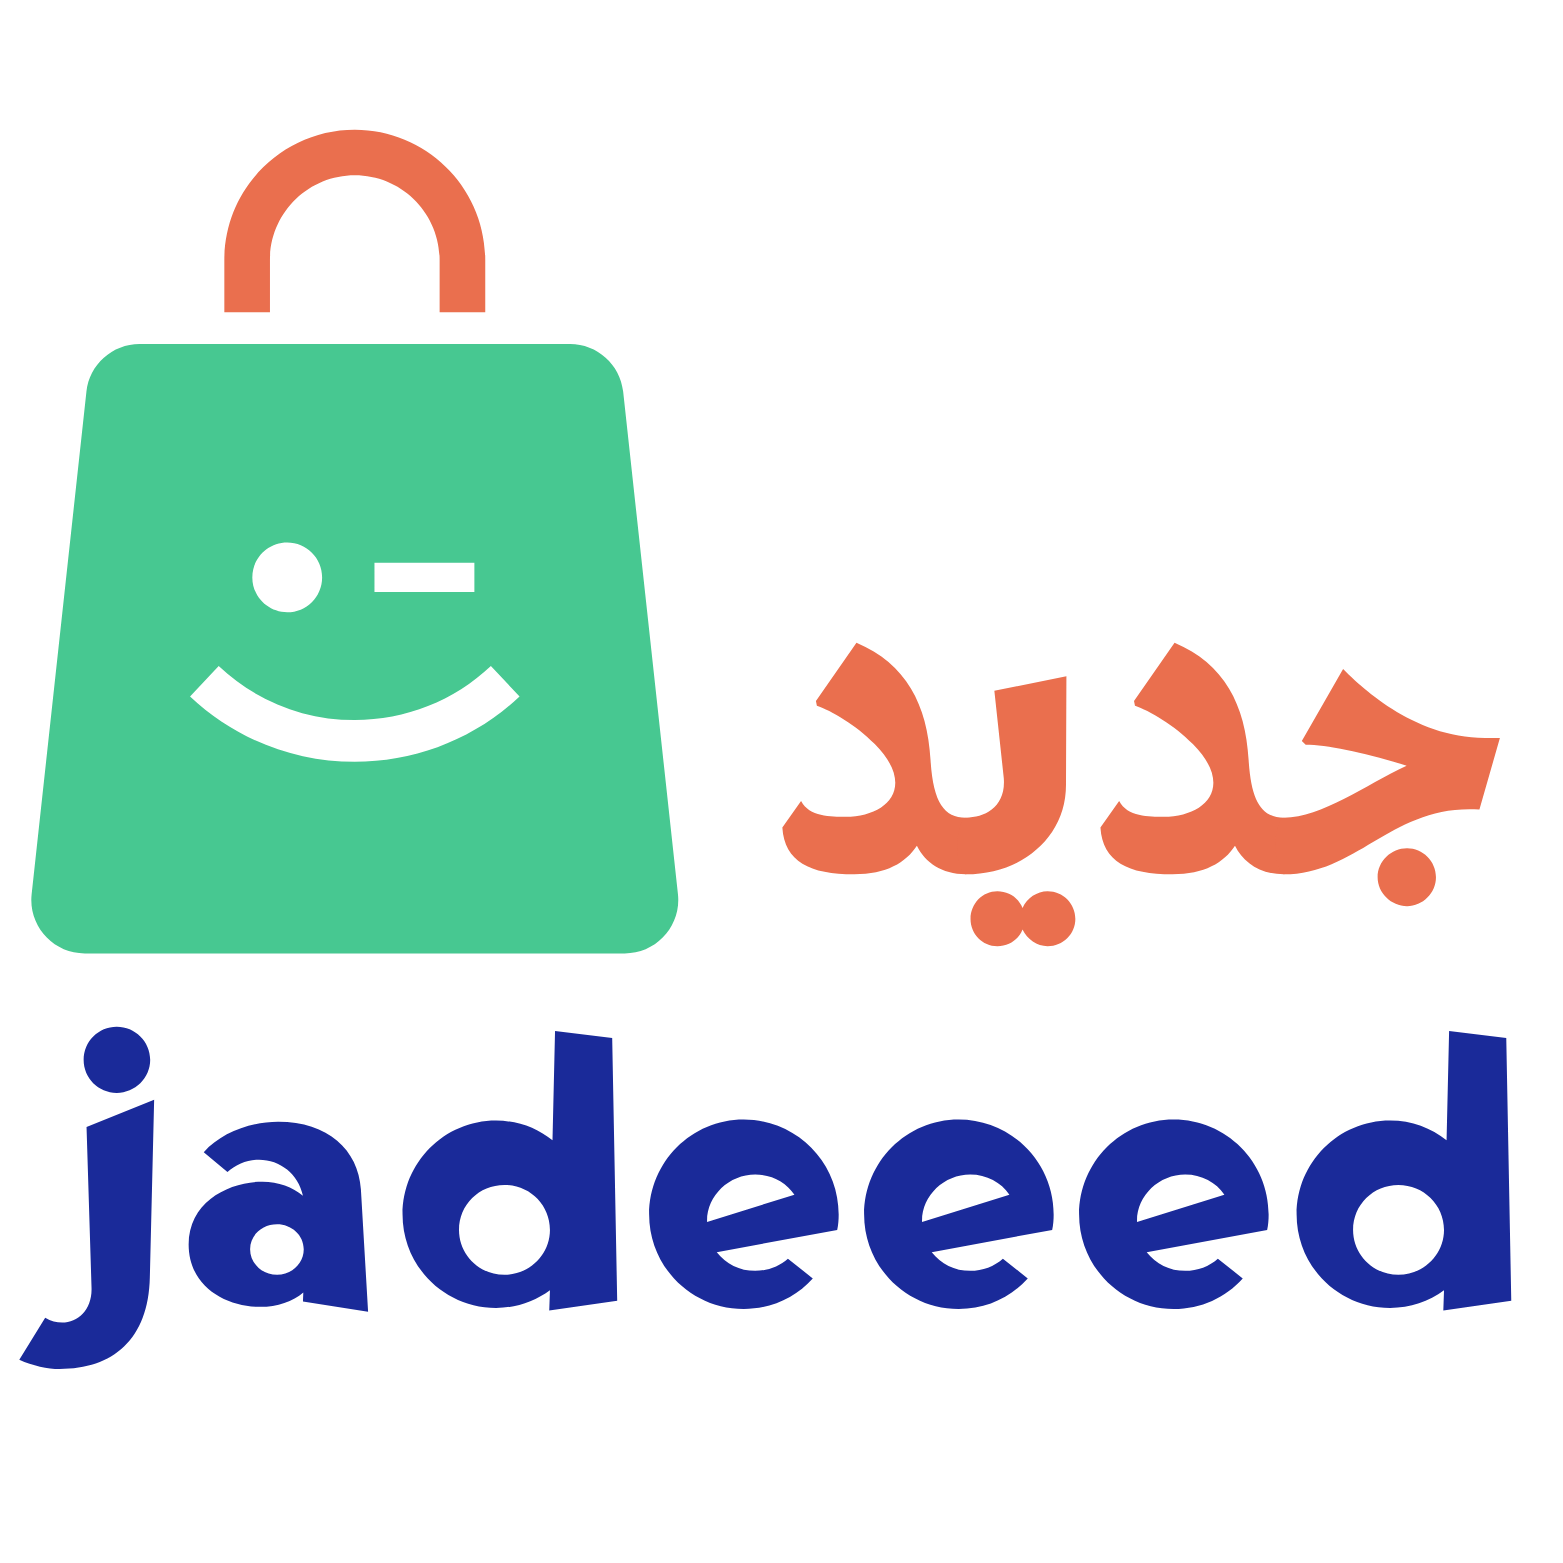 Jadeeed